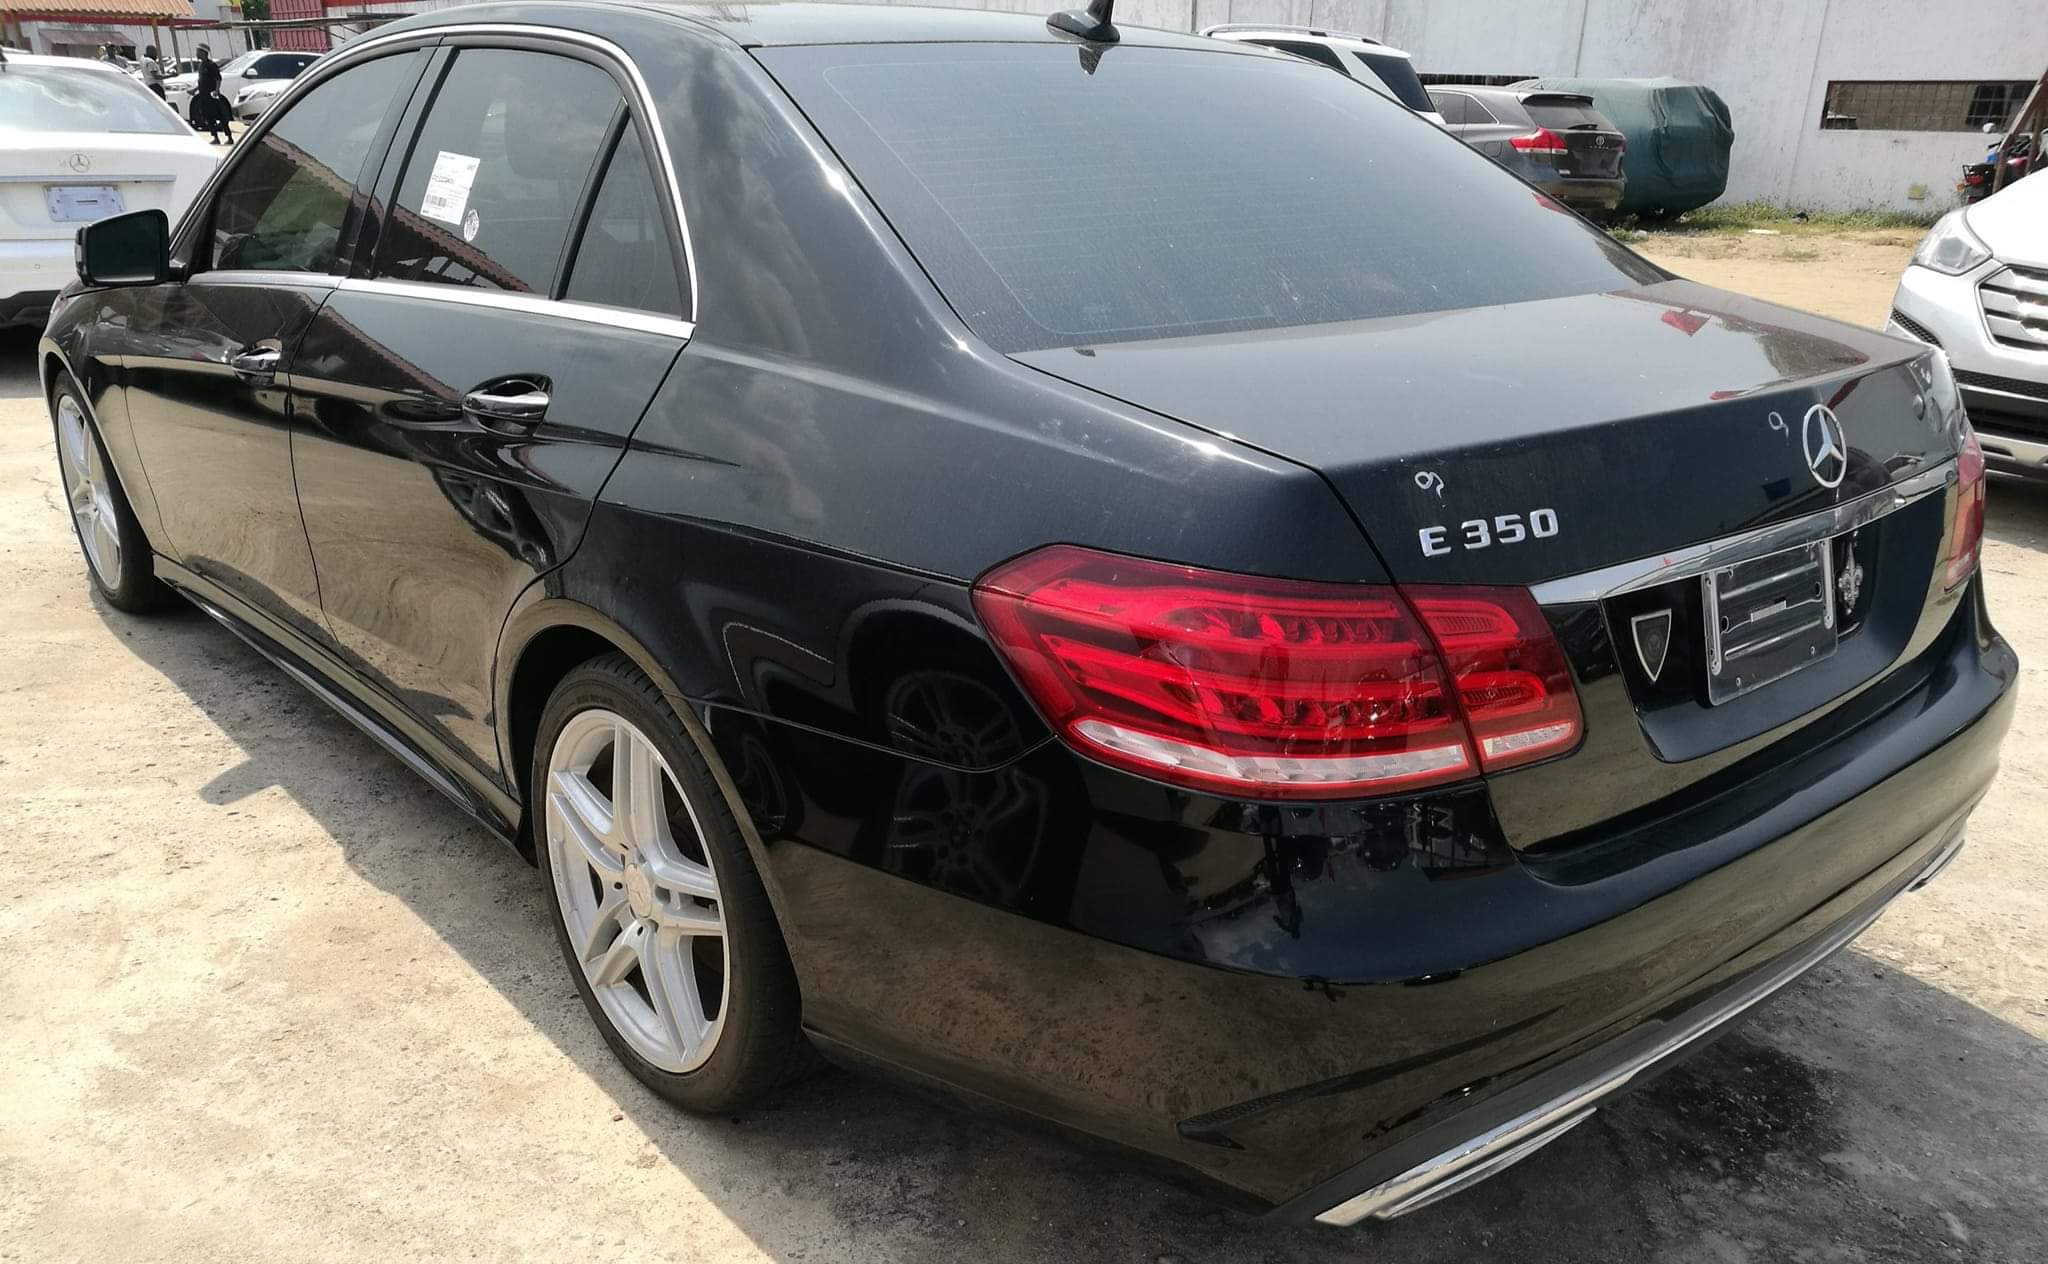 Lire la suite à propos de l’article Price Mercedes E350 in Nigeria made Cotonou cars